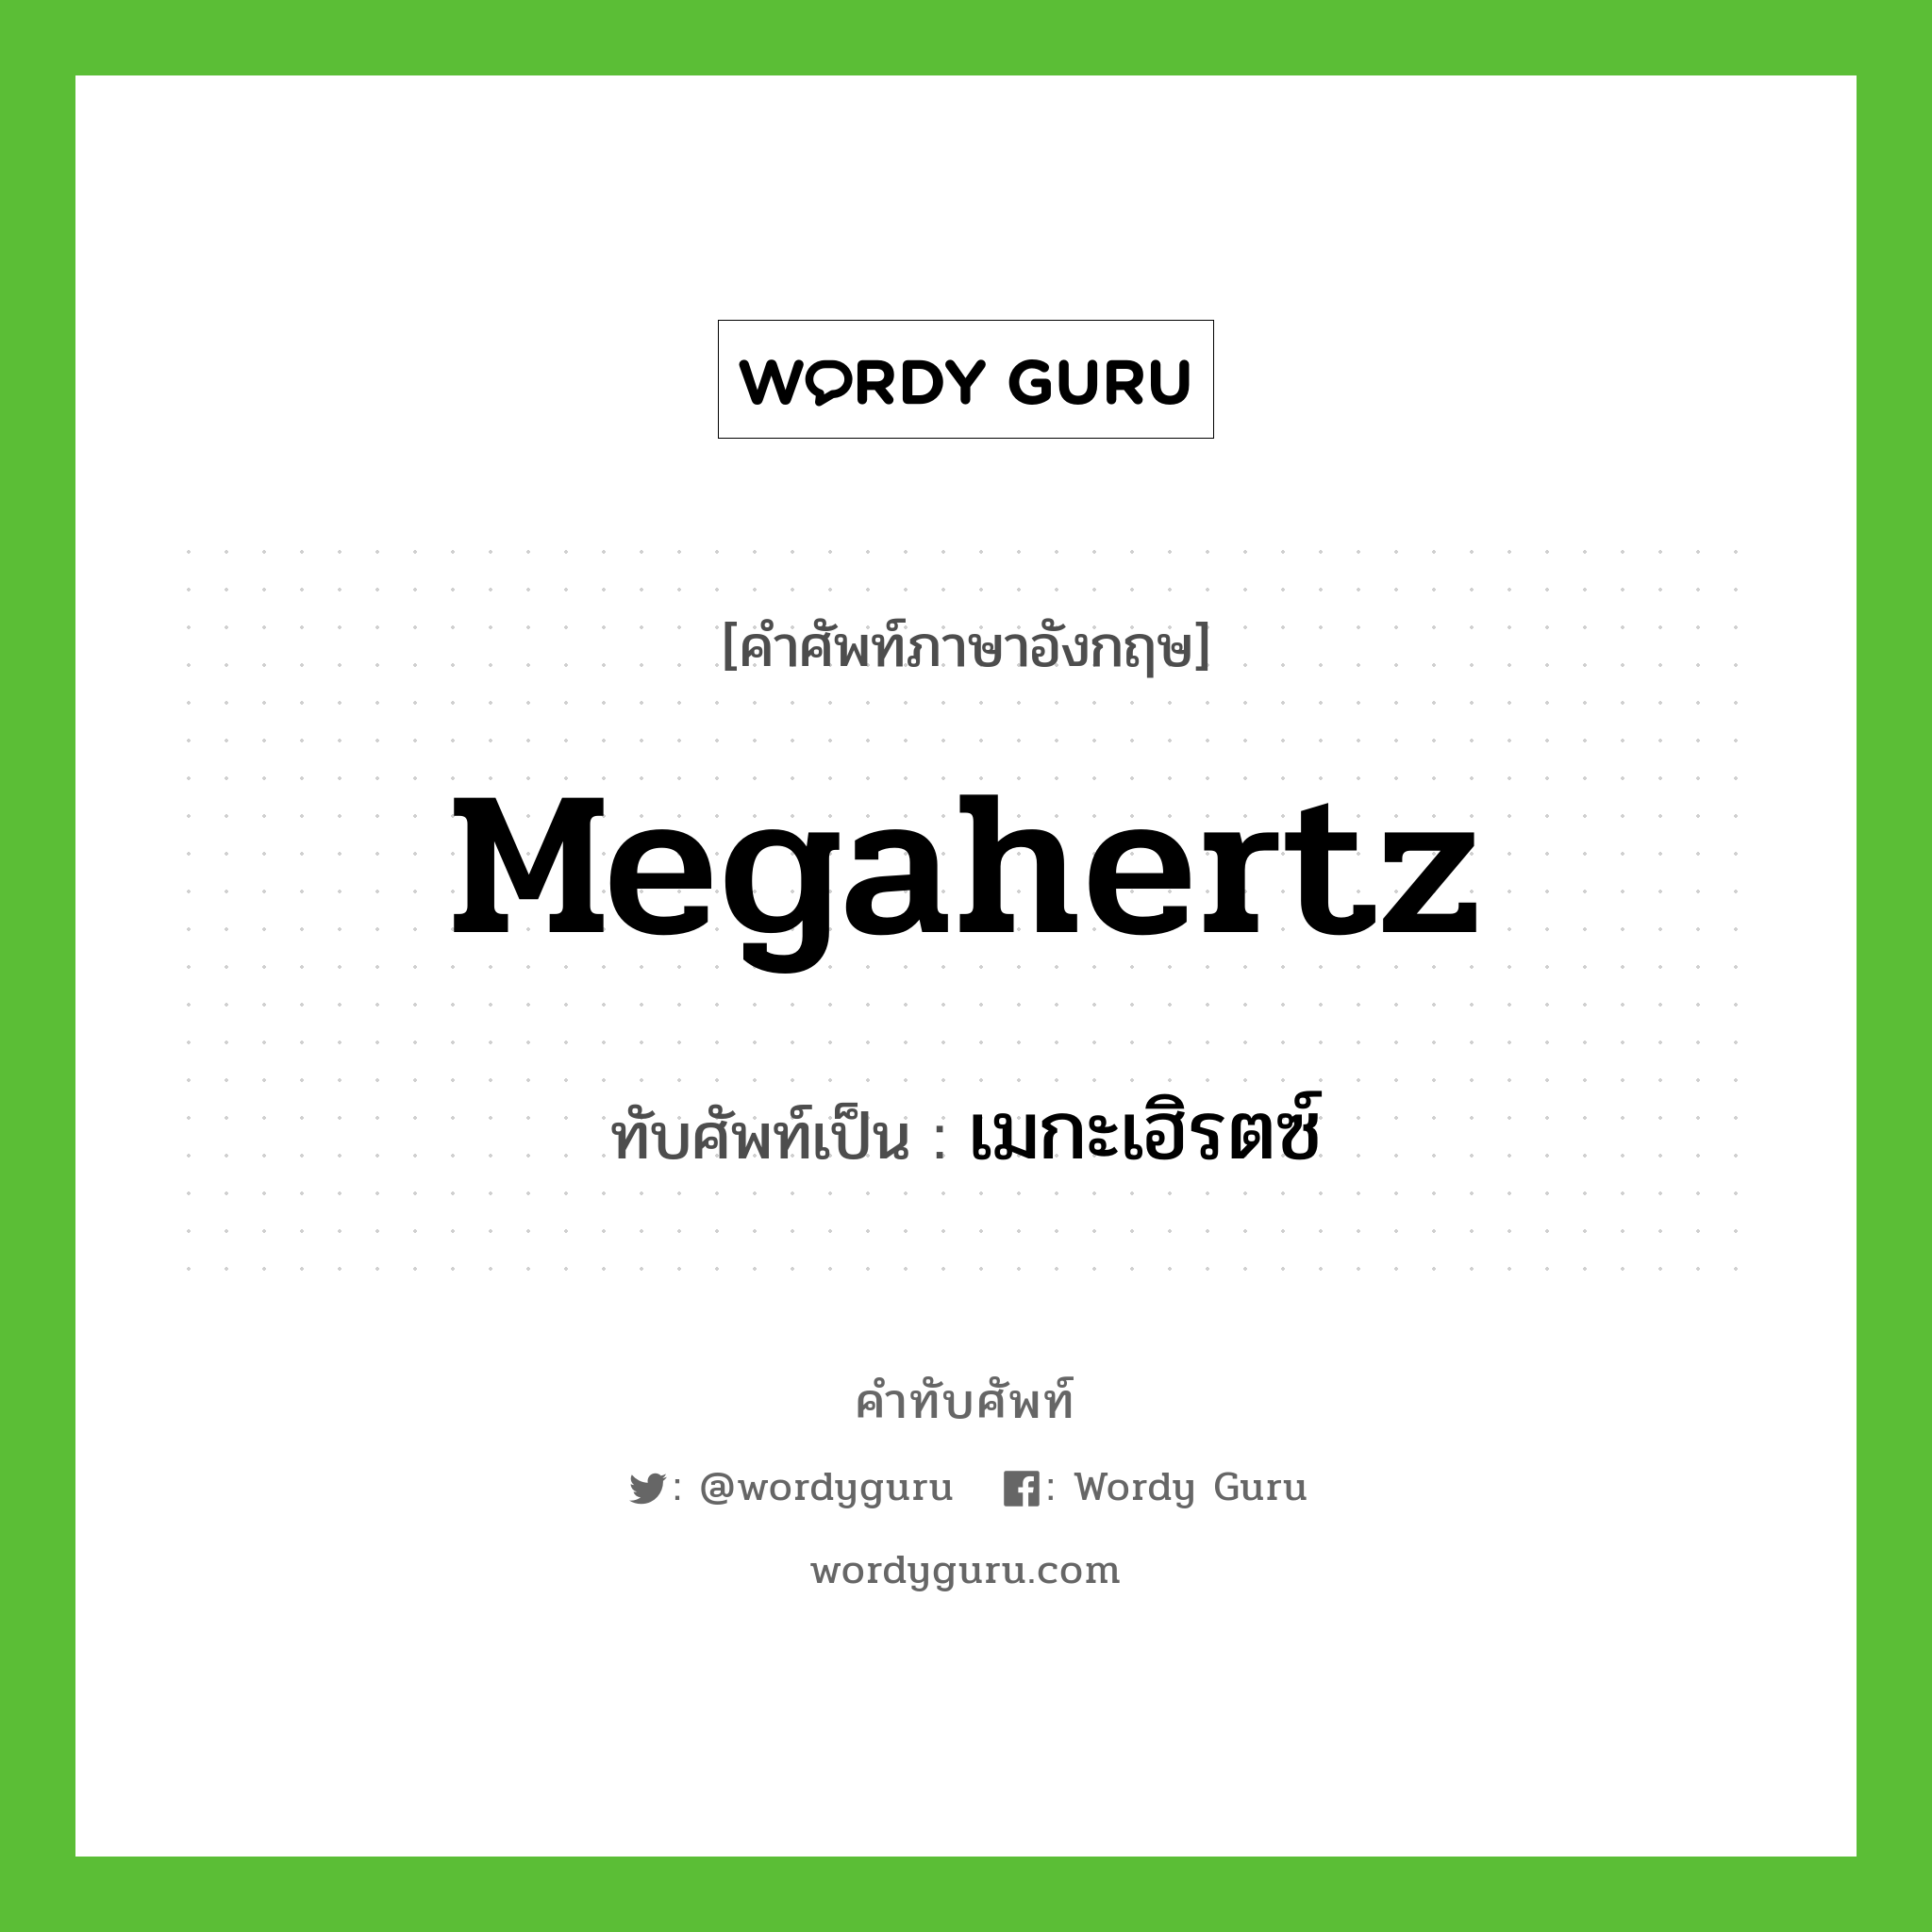 เมกะเฮิรตซ์ เขียนอย่างไร?, คำศัพท์ภาษาอังกฤษ เมกะเฮิรตซ์ ทับศัพท์เป็น megahertz